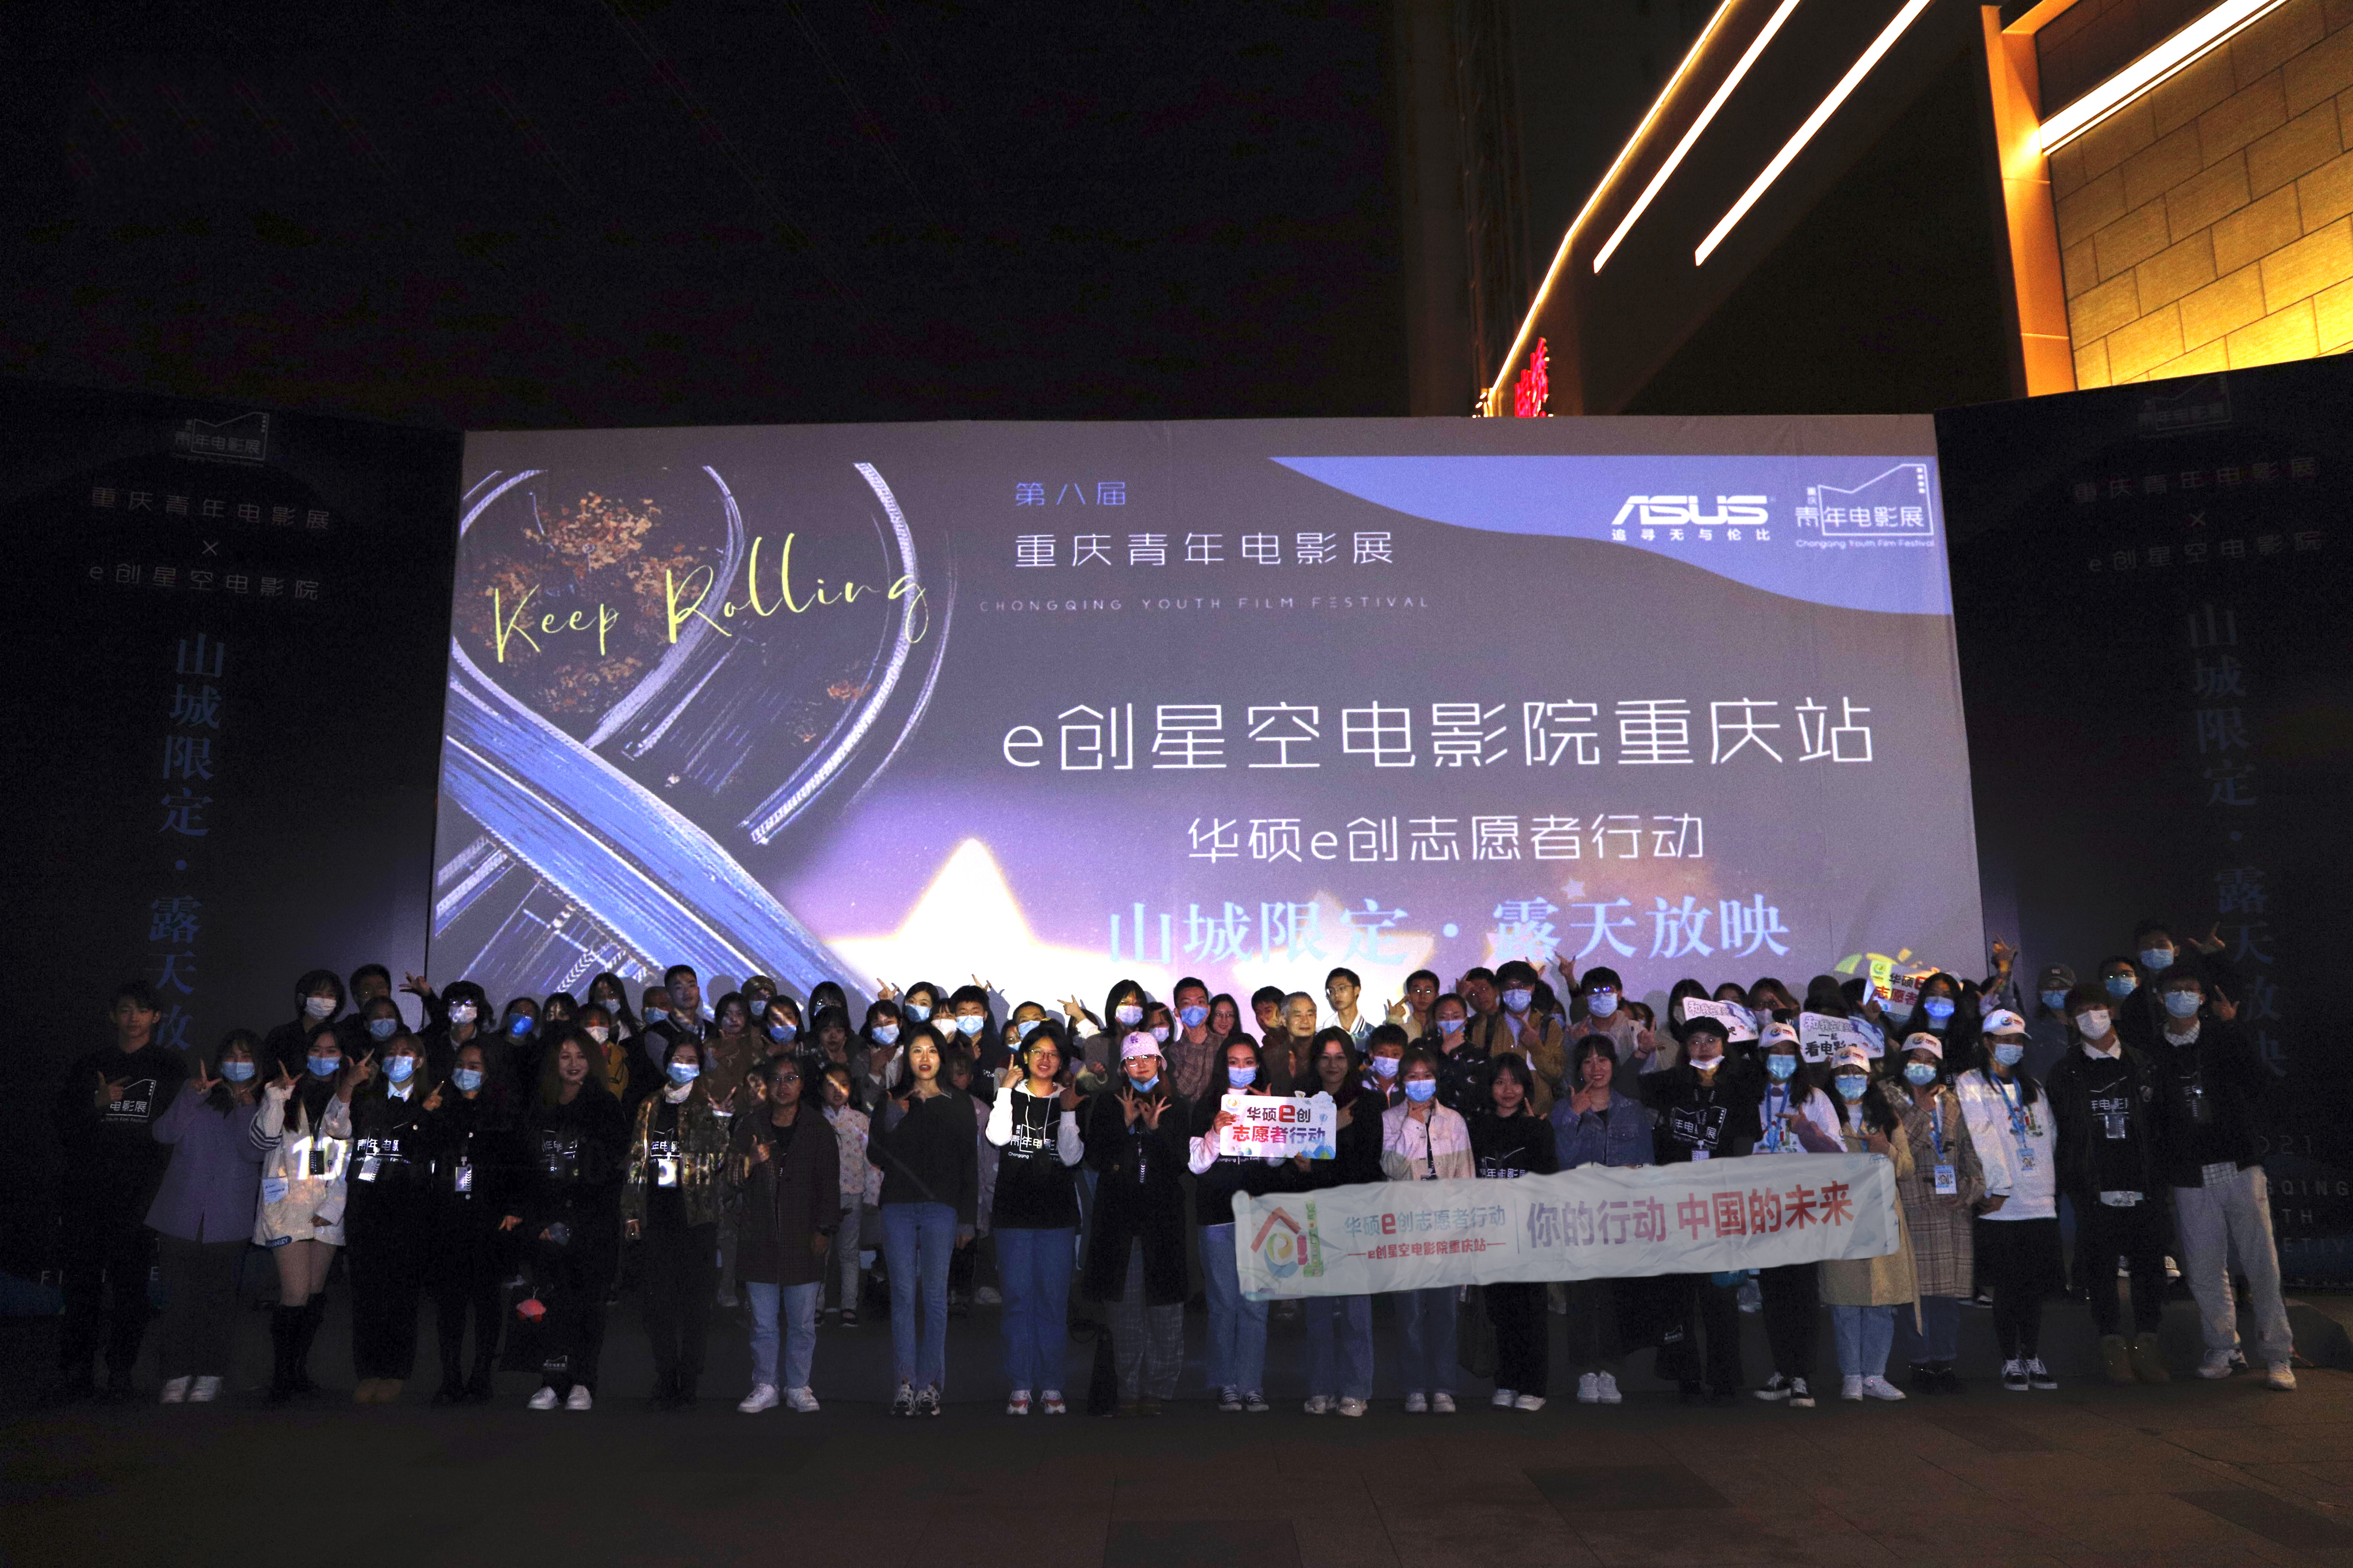 华硕e创星空电影院携手重庆青年电影展在山城的星空下传递爱